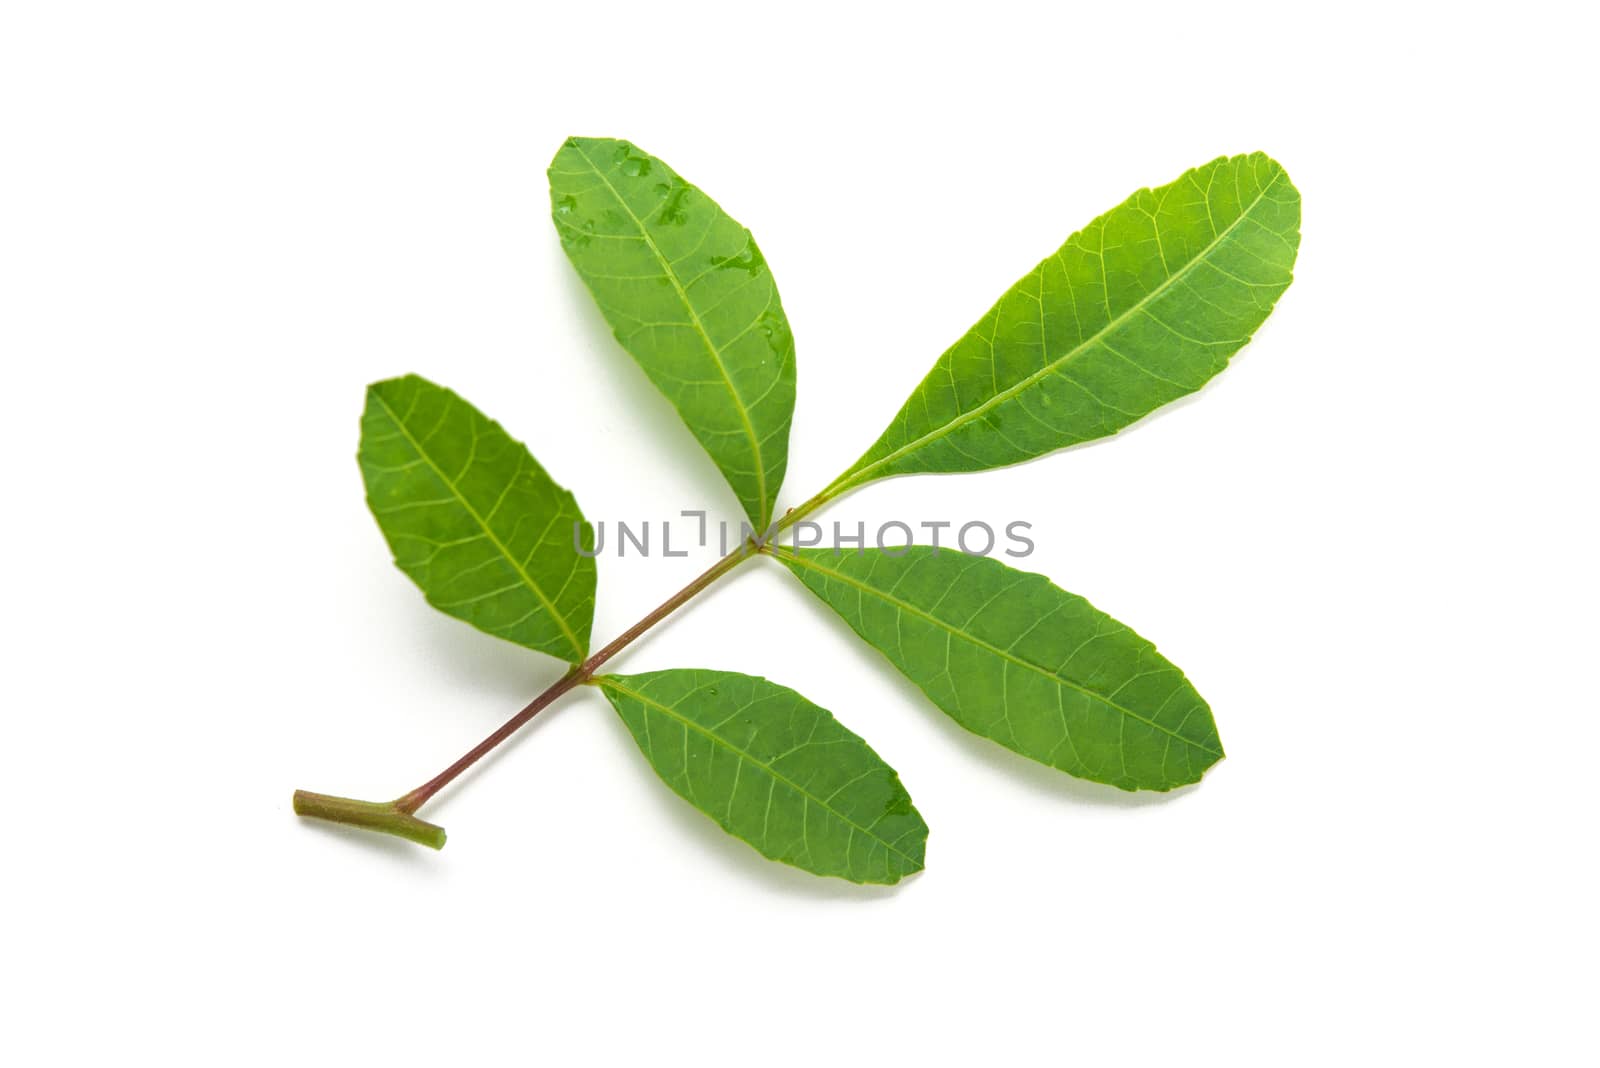 brazilian pepper leaf by antpkr